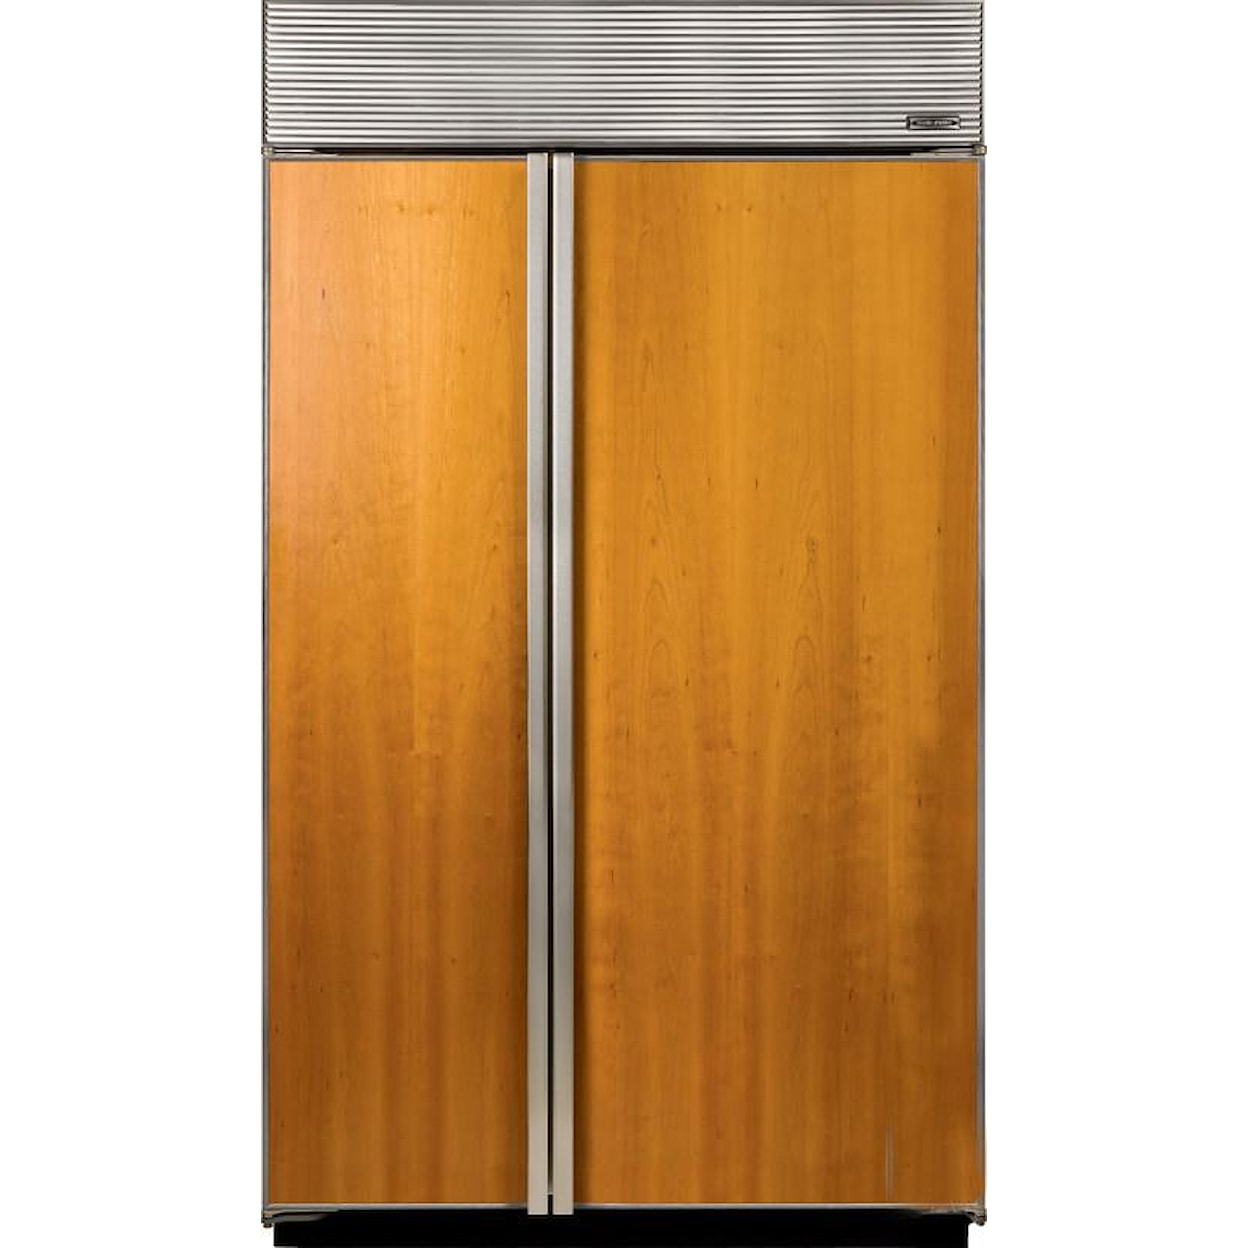 Sub-Zero Built-In Refrigerators 23.7 Cu. Ft. Built-In Refrigerator